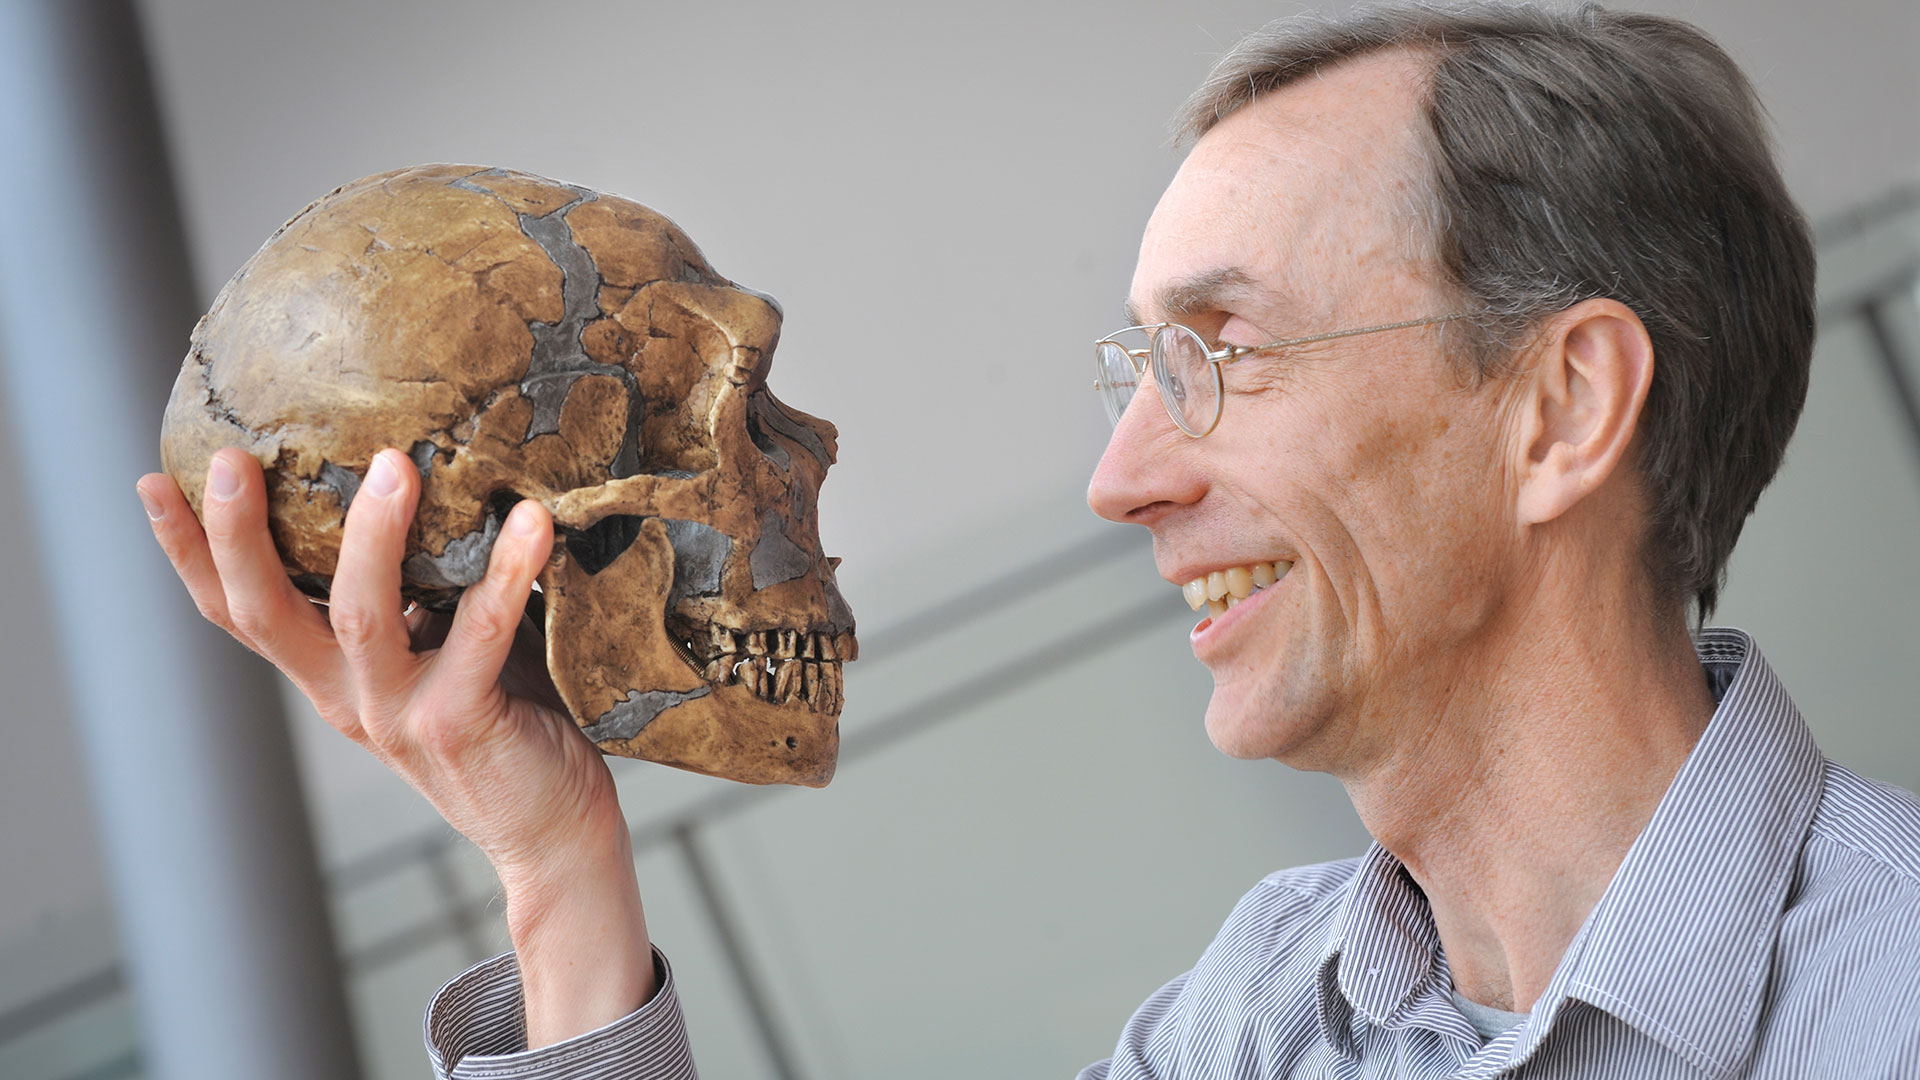 Los hallazgos del Nobel de Medicina 2022: reveló el ADN del neandertal y mostró qué diferencia a los humanos de sus ancestros